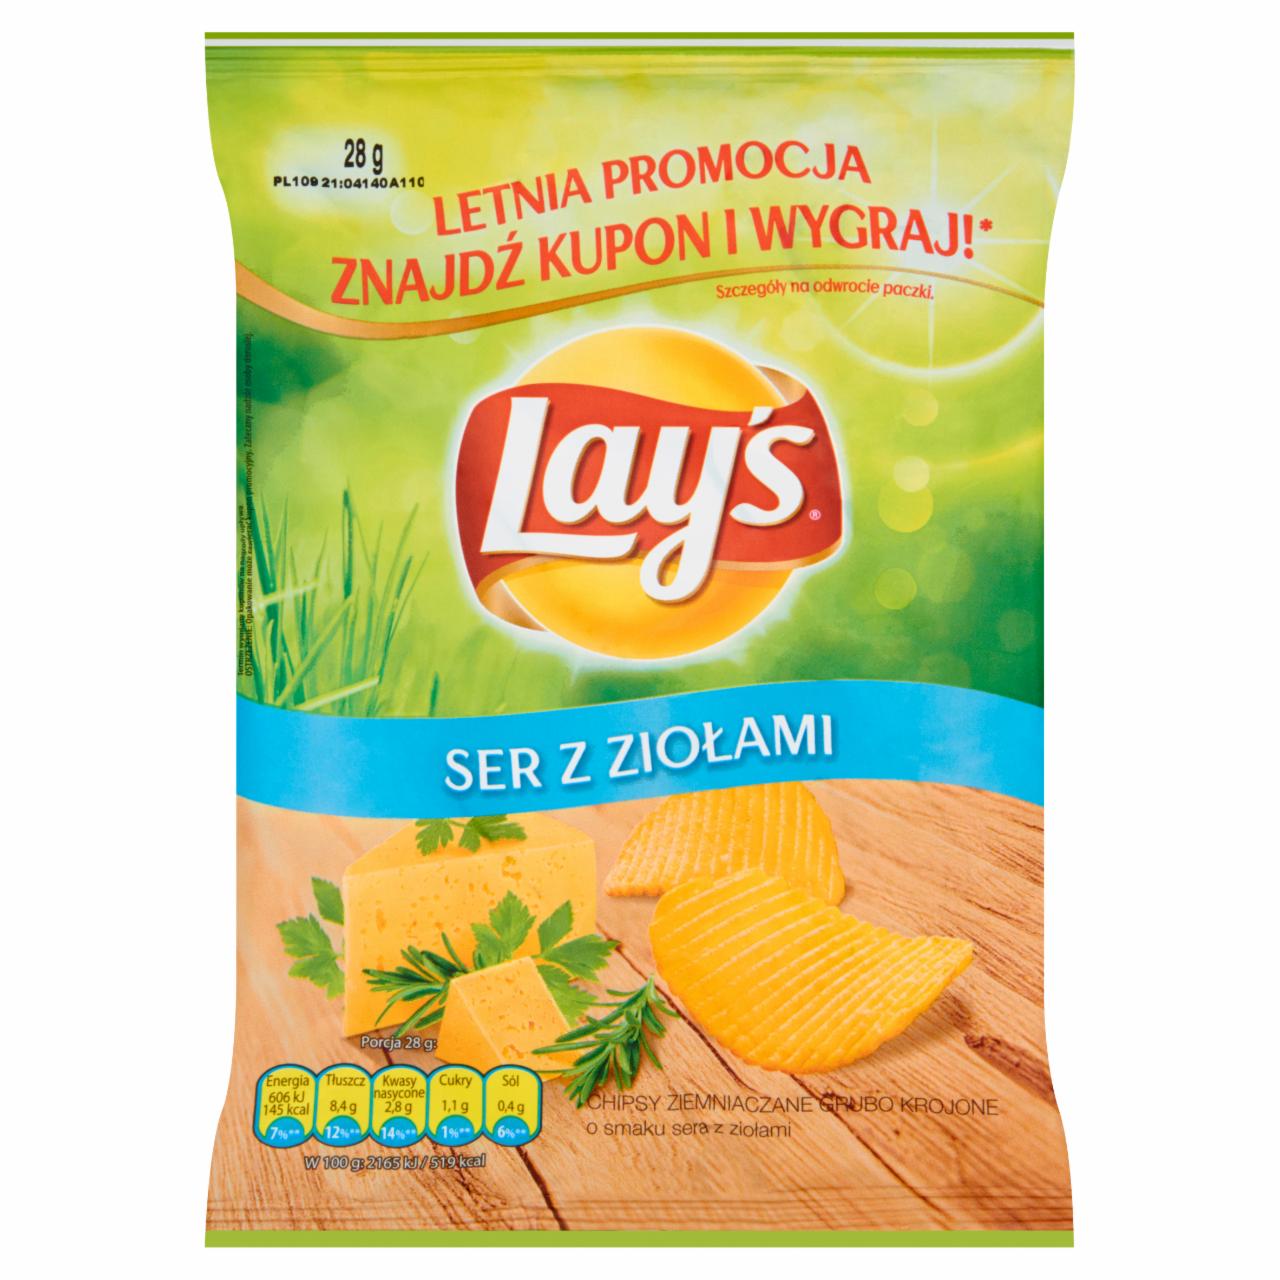 Zdjęcia - Lay's Ser z ziołami Chipsy ziemniaczane grubo krojone 28 g